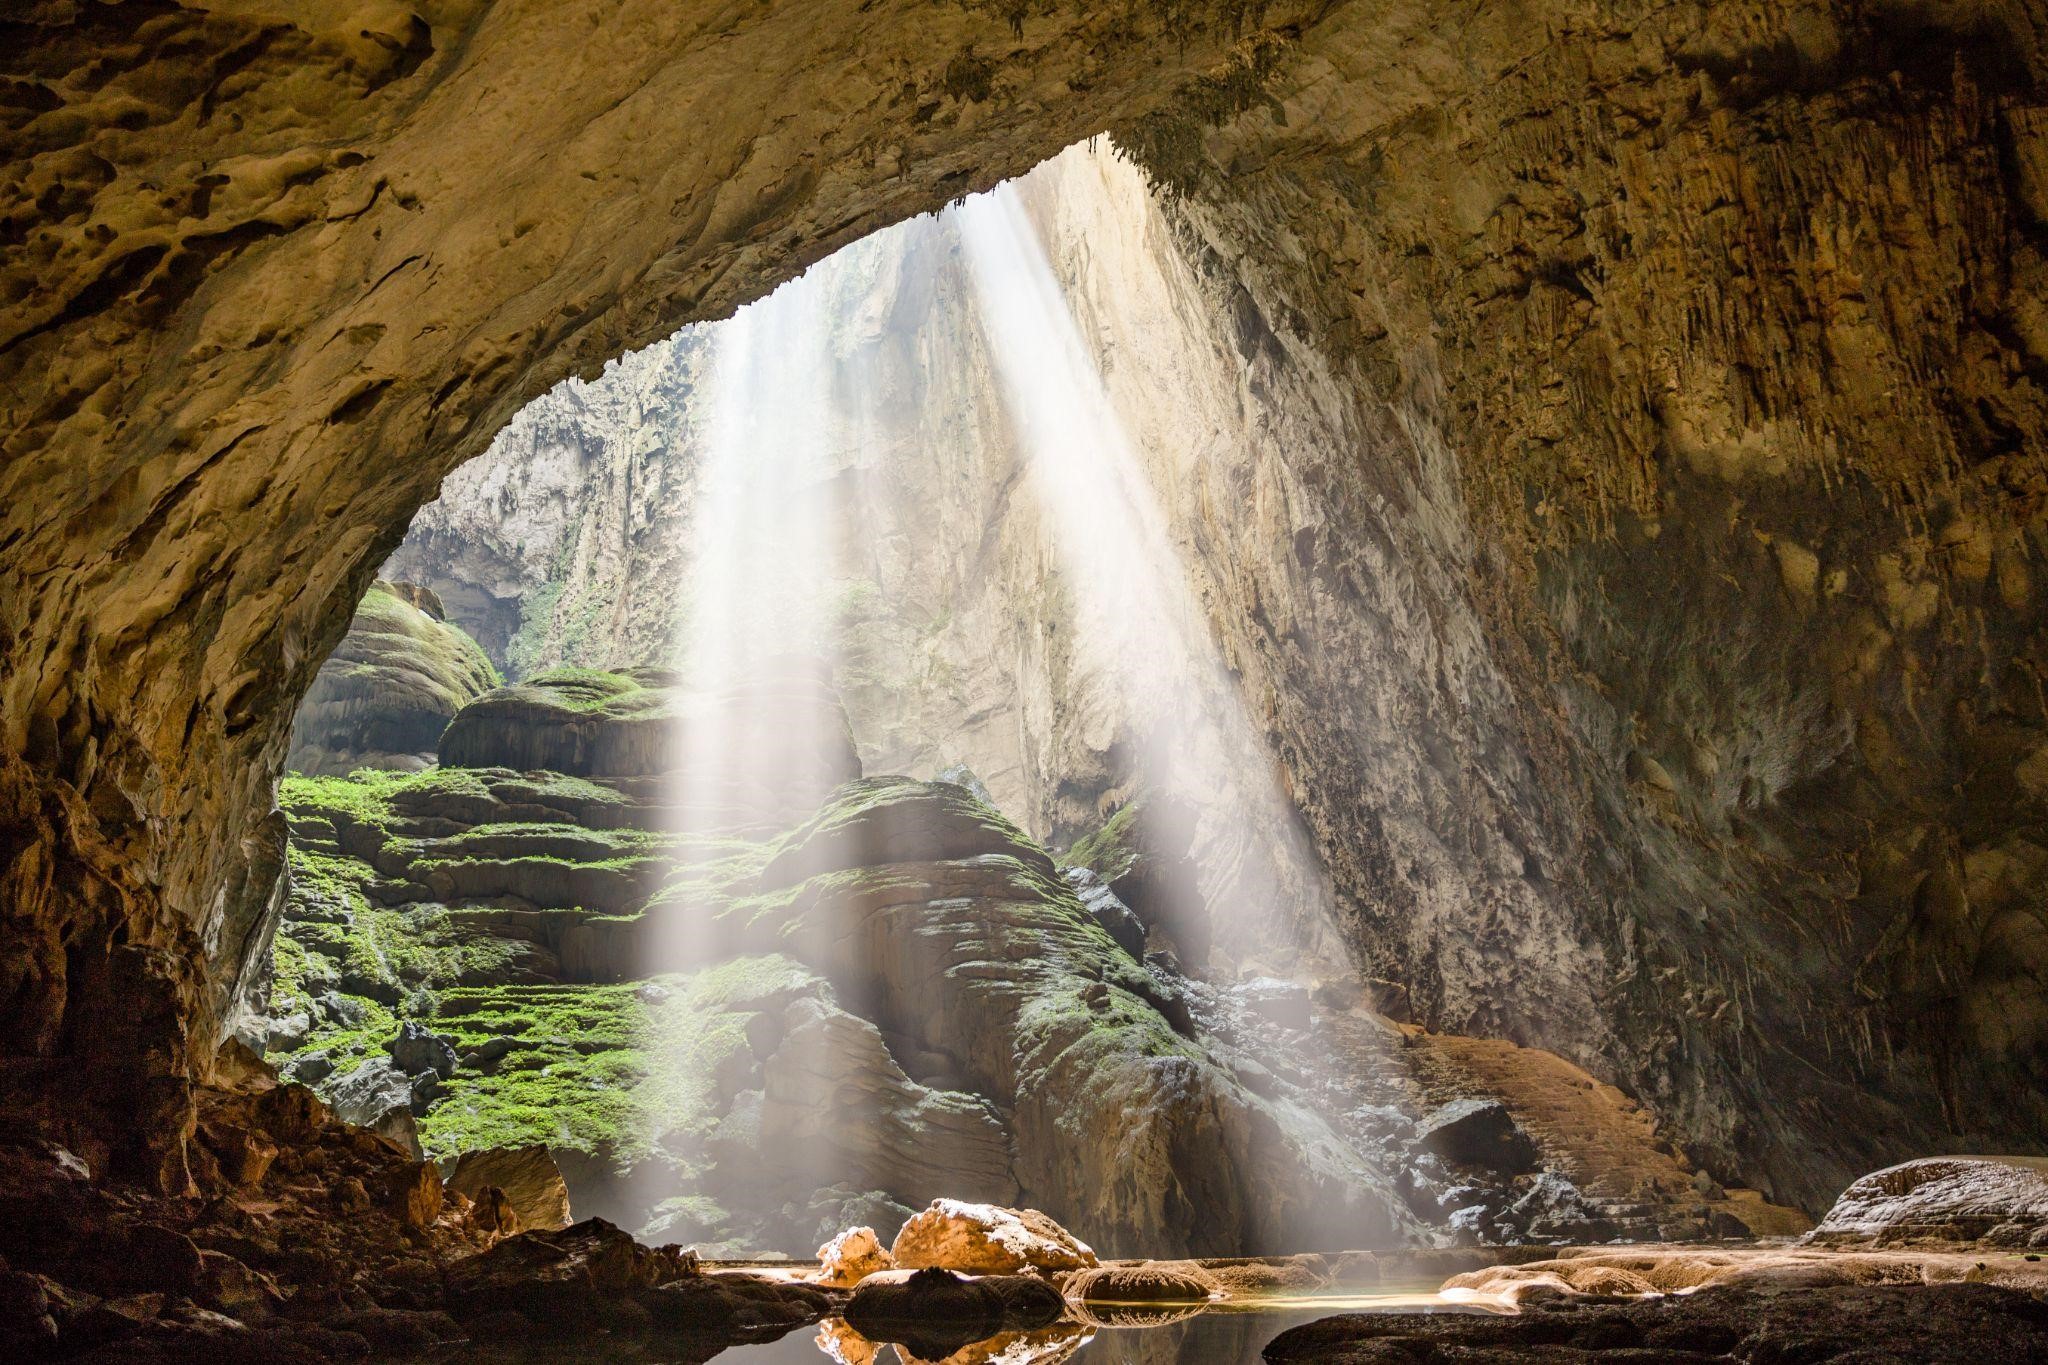 Hang động tự nhiên: Thiên nhiên có rất nhiều bí ẩn và những hang động tự nhiên chính là một ví dụ đầy thú vị. Hãy đến khám phá những điều kỳ diệu và đầy truyền thuyết trong các hang động này để phấn khích cả tâm hồn và trí tuệ.